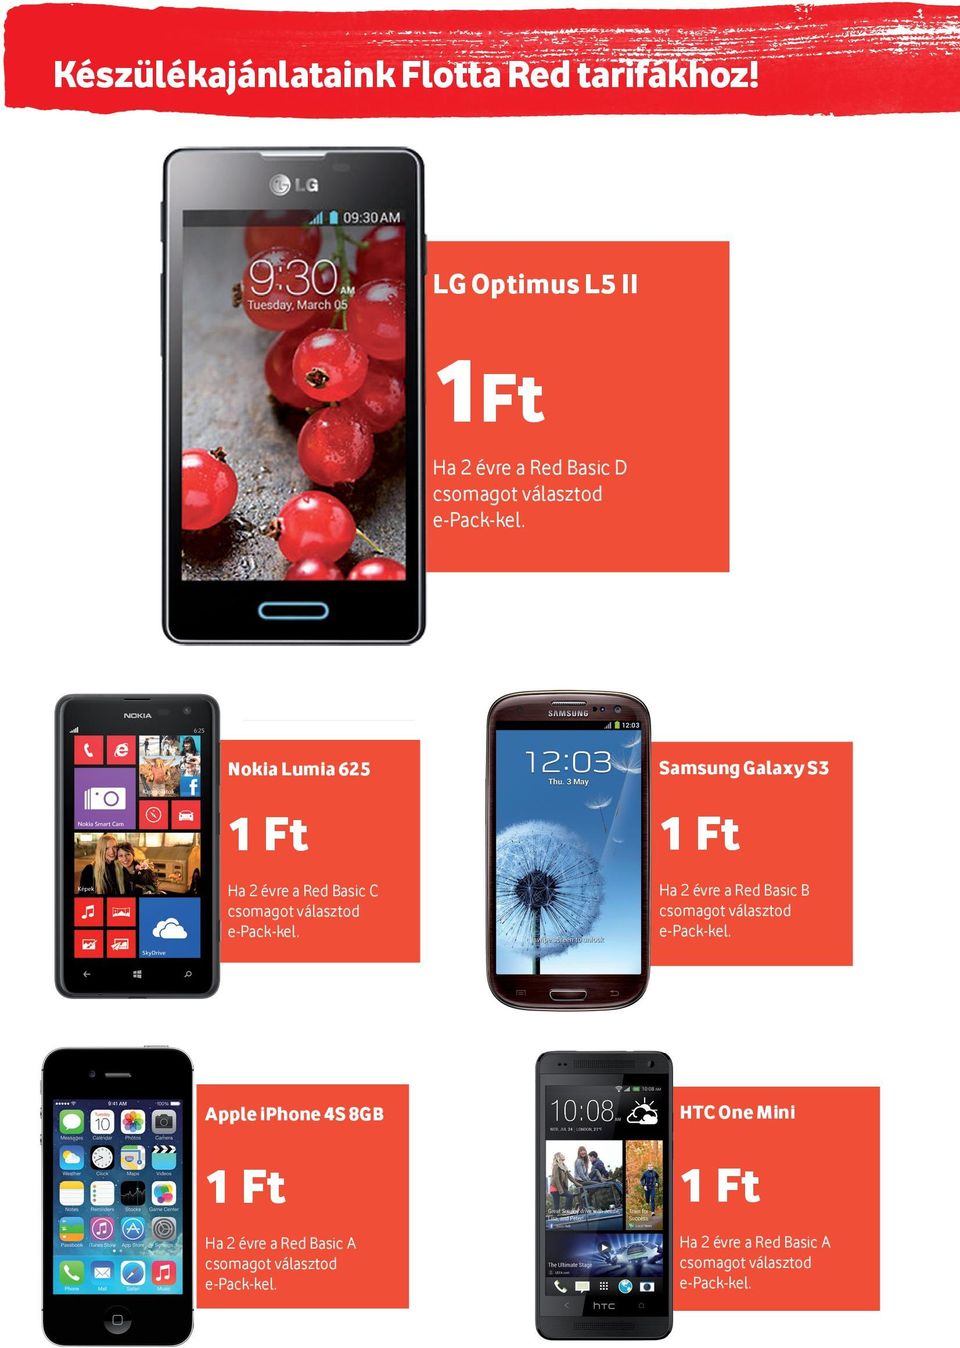 Nokia Lumia 625 1 Ft Ha 2 évre a Red Basic C csomagot választod e-pack-kel.